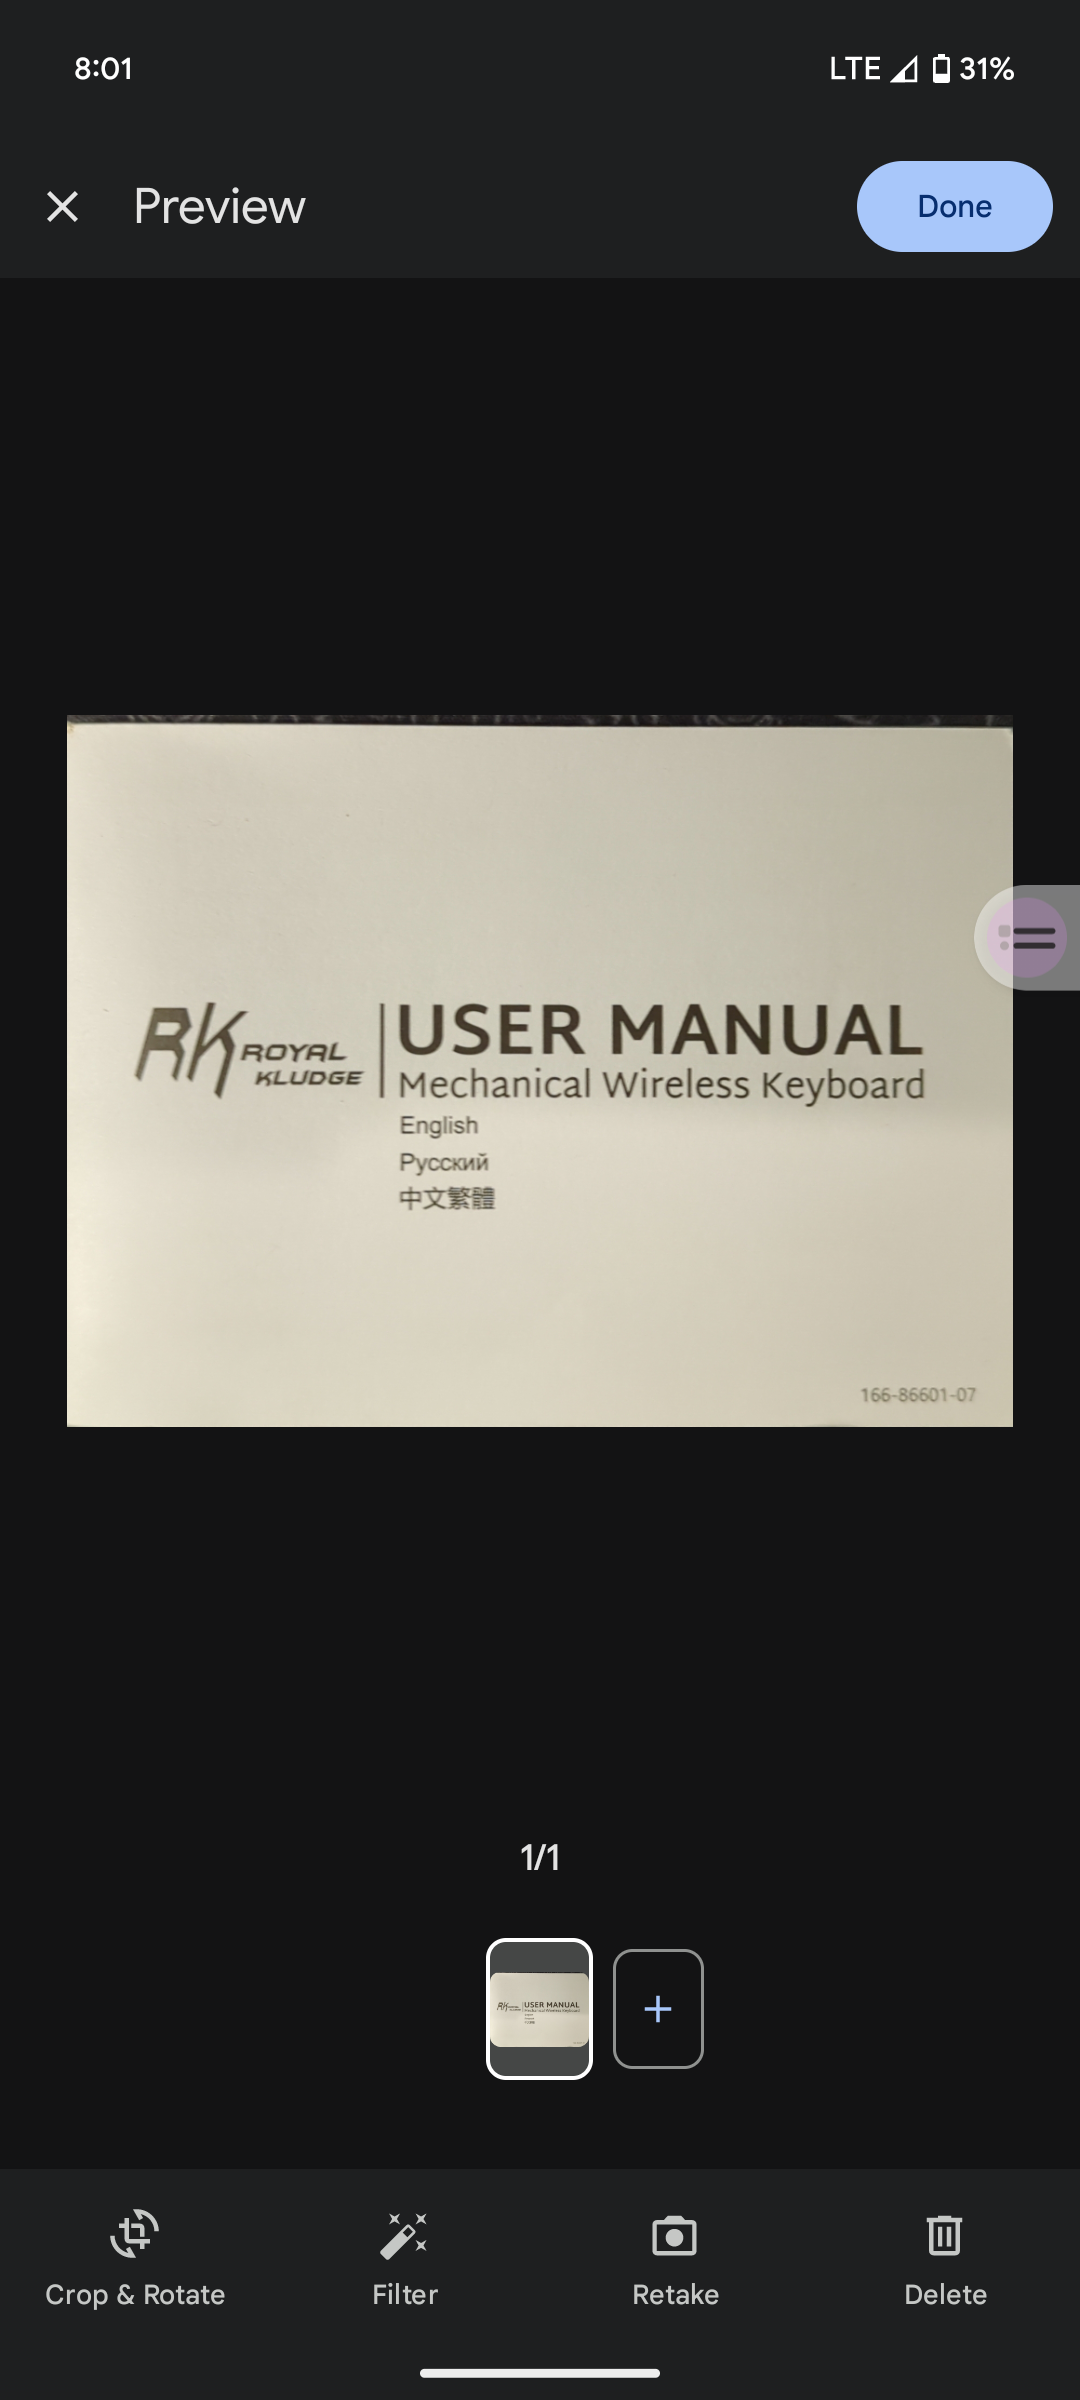 Captura de tela da nova IU do scanner de documentos do Google Drive